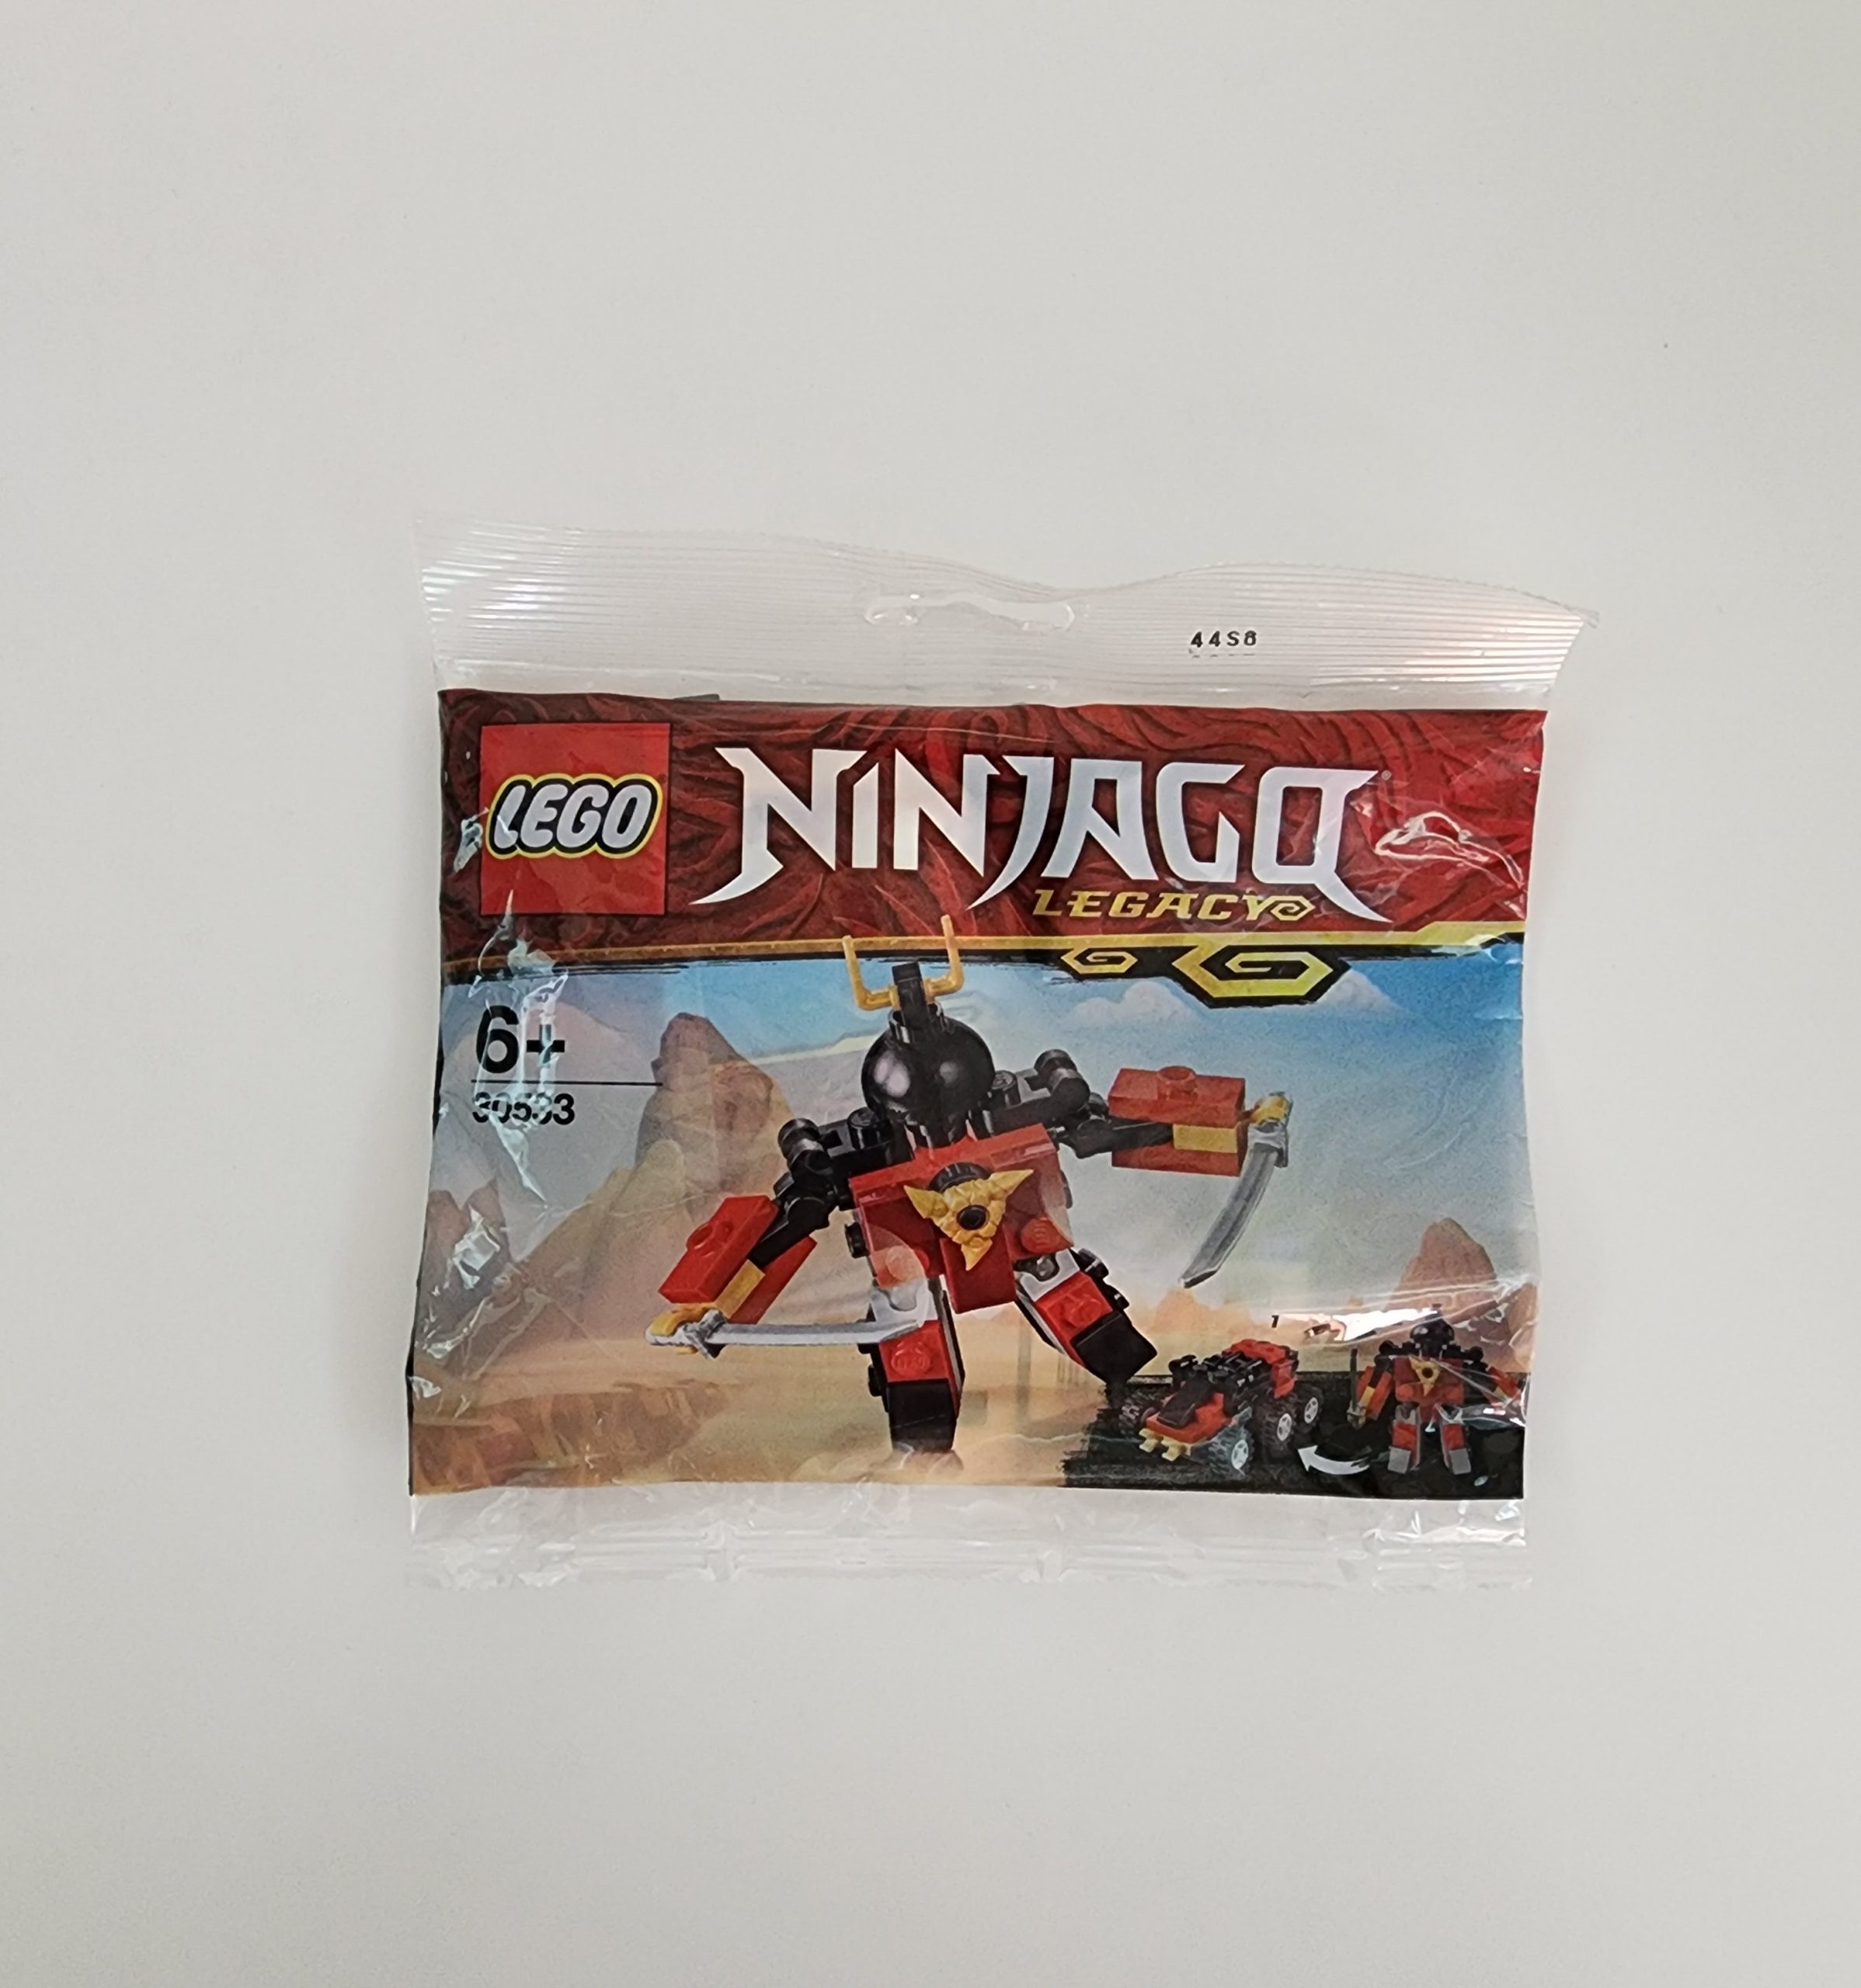 Lego ninjago legacy